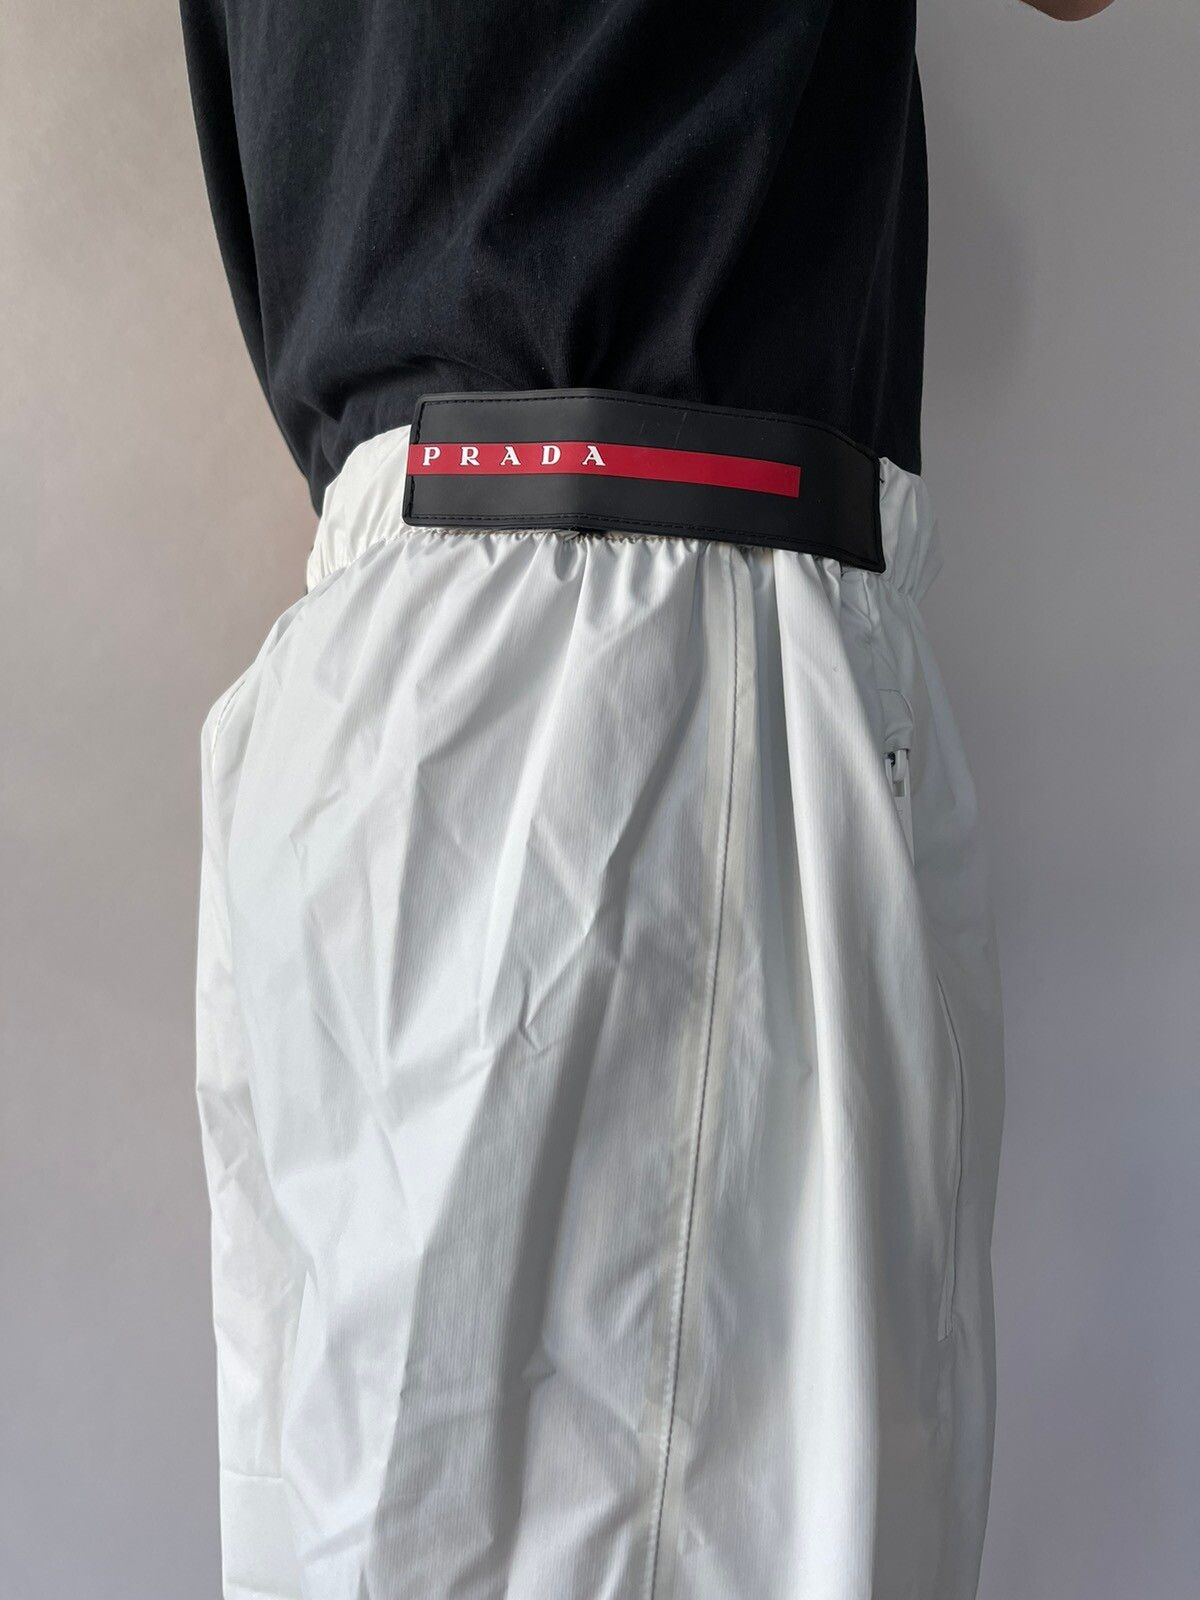 Prada Light Nylon wide-leg pants Size US 32 / EU 48 - 1 Preview